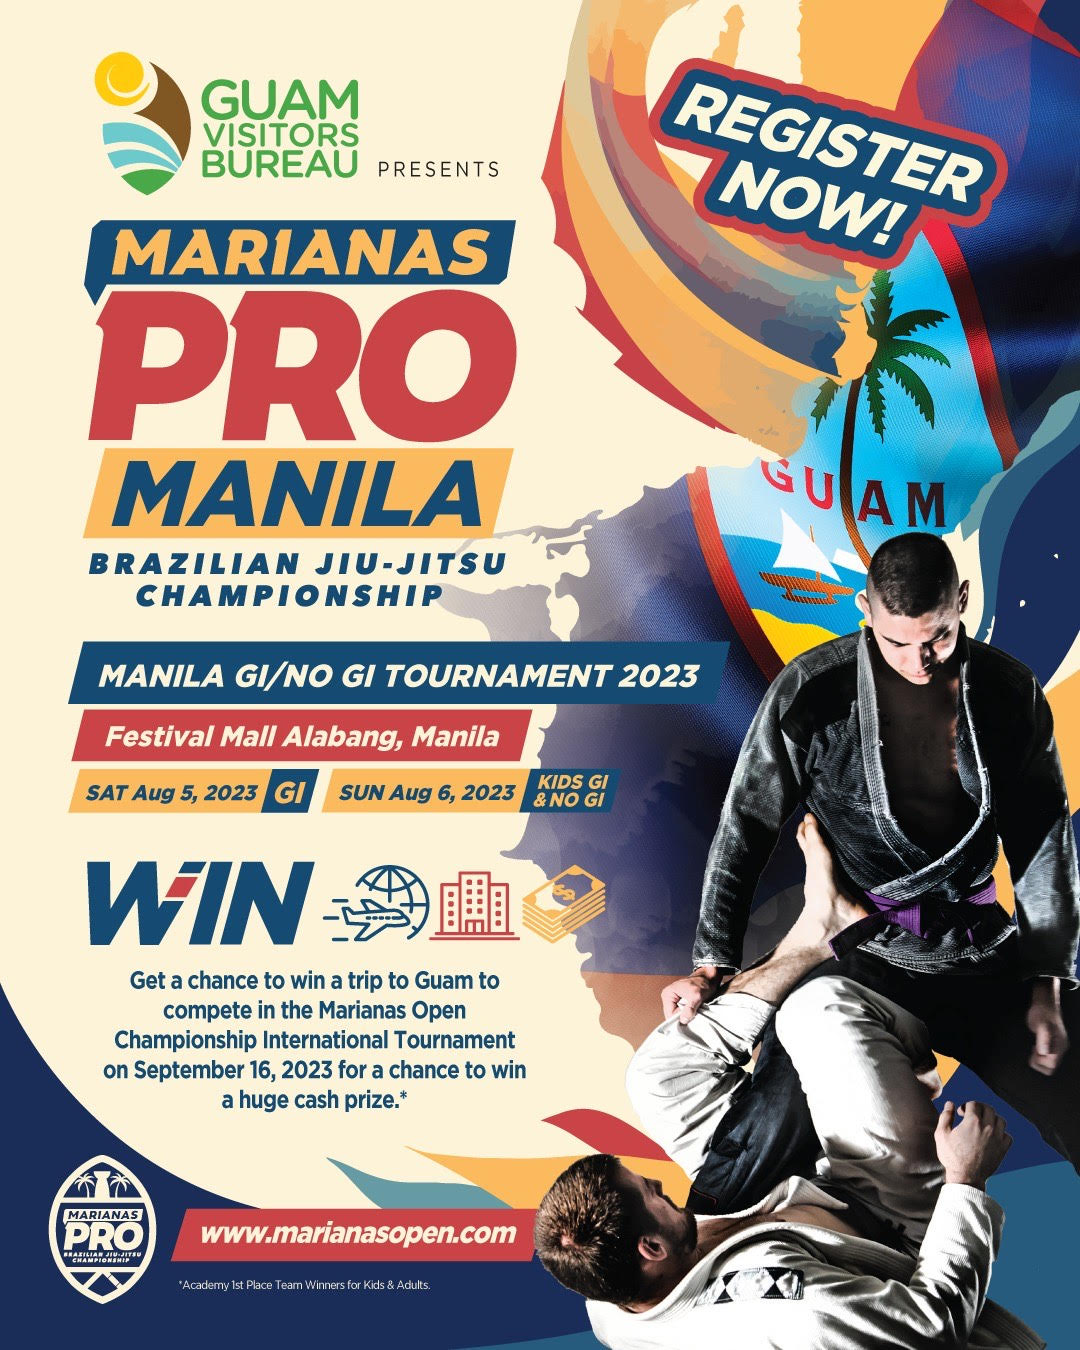 Marianas Pro Manila 2023